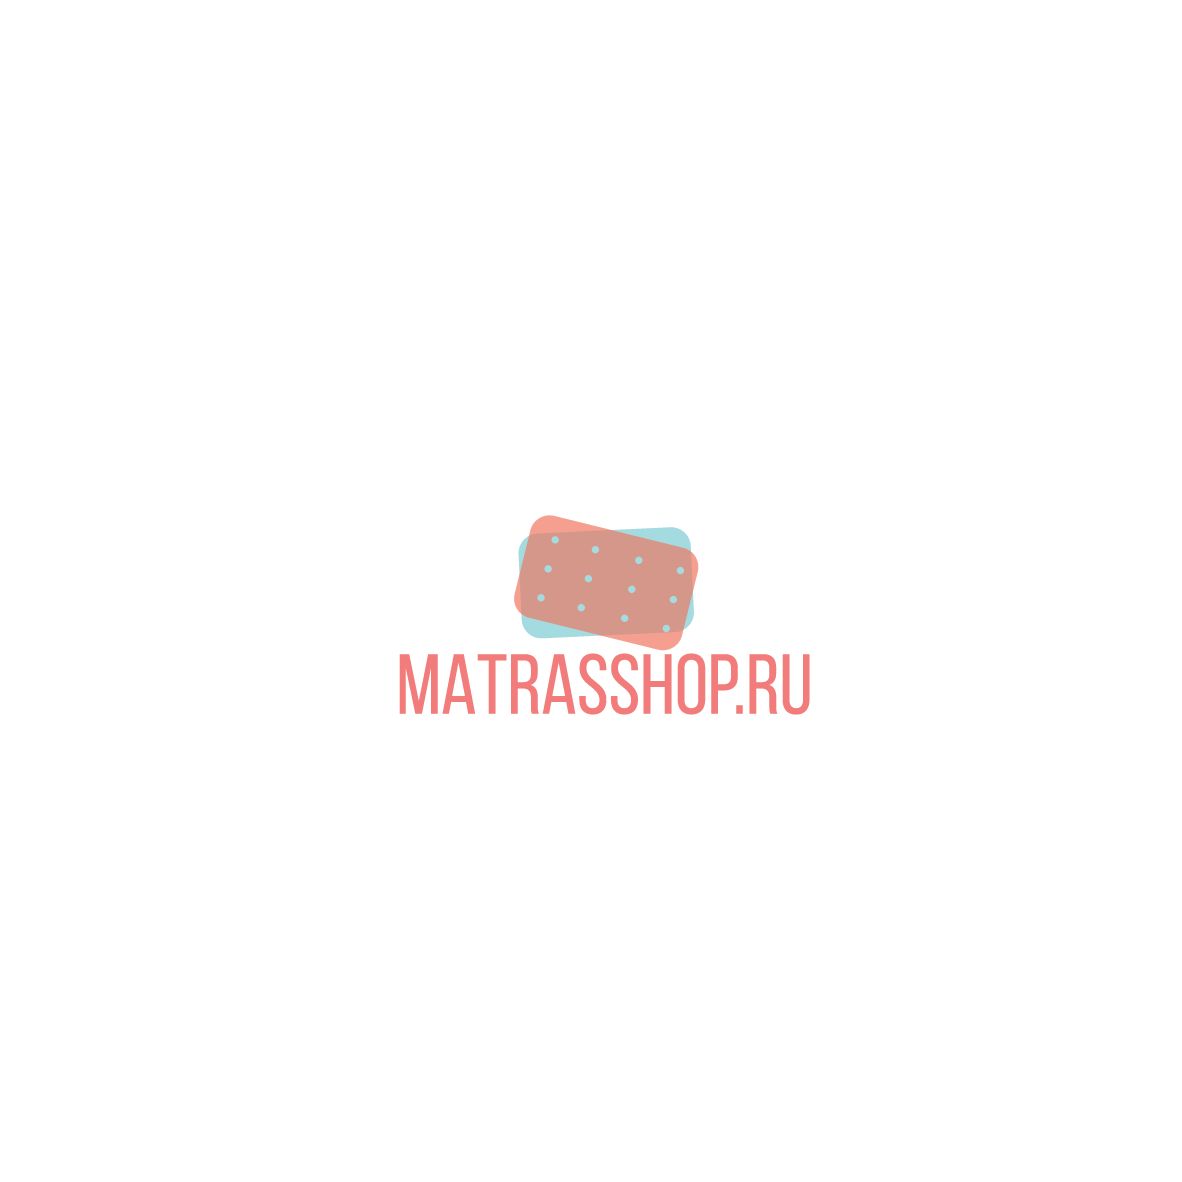 Логотип для Логотип для сети магазинов MATRASSHOP.RU - дизайнер kvass